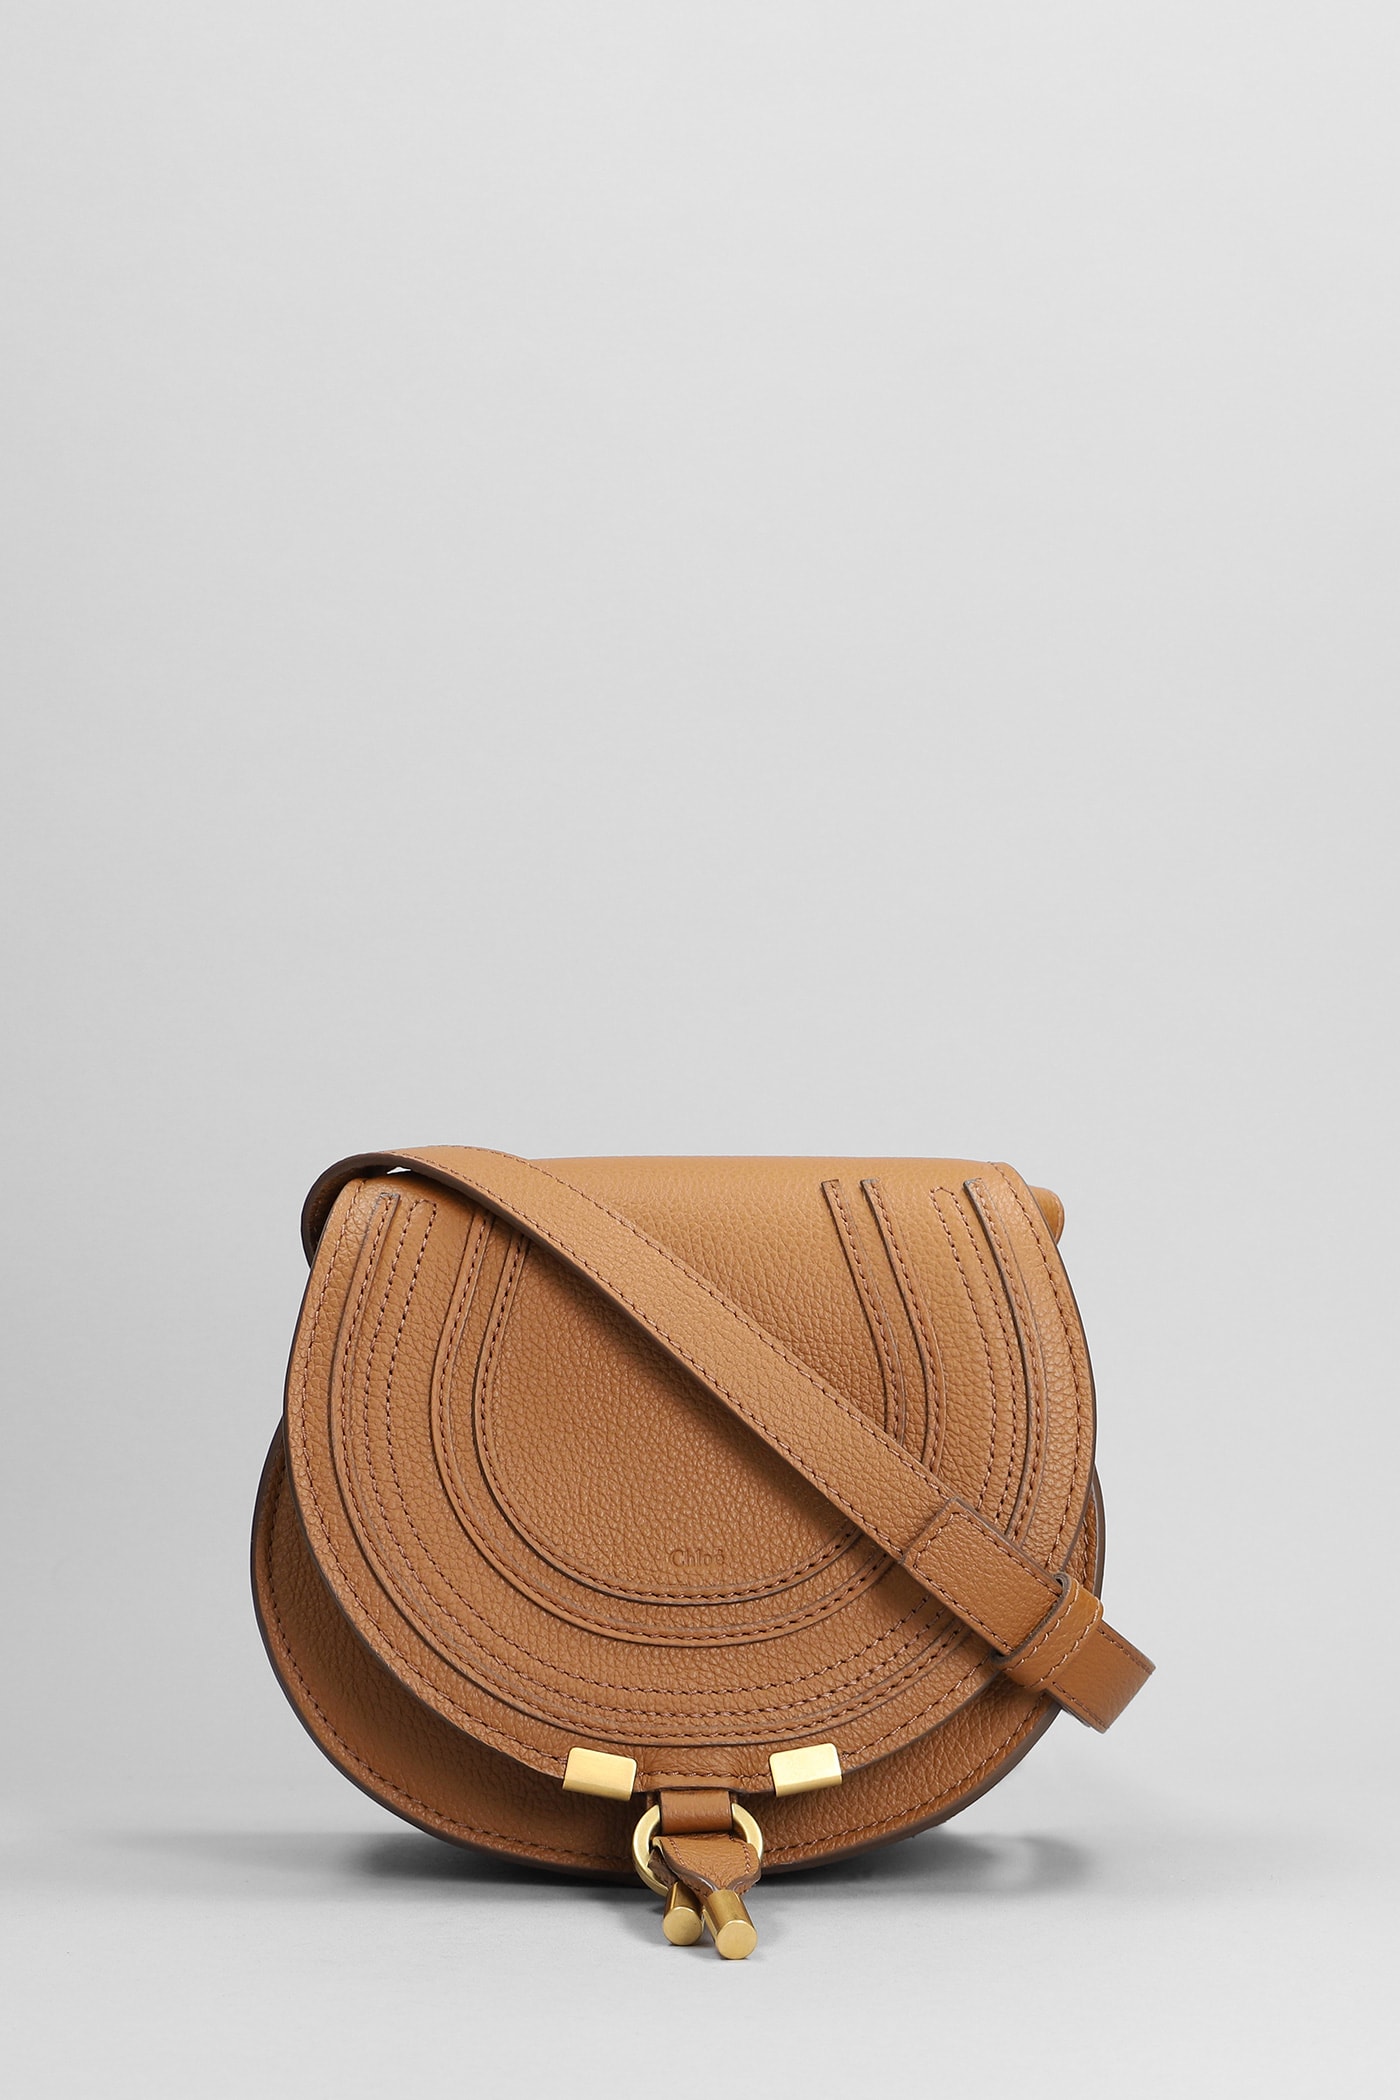 Chloé Mercie Shoulder Bag In Leather Color Leather